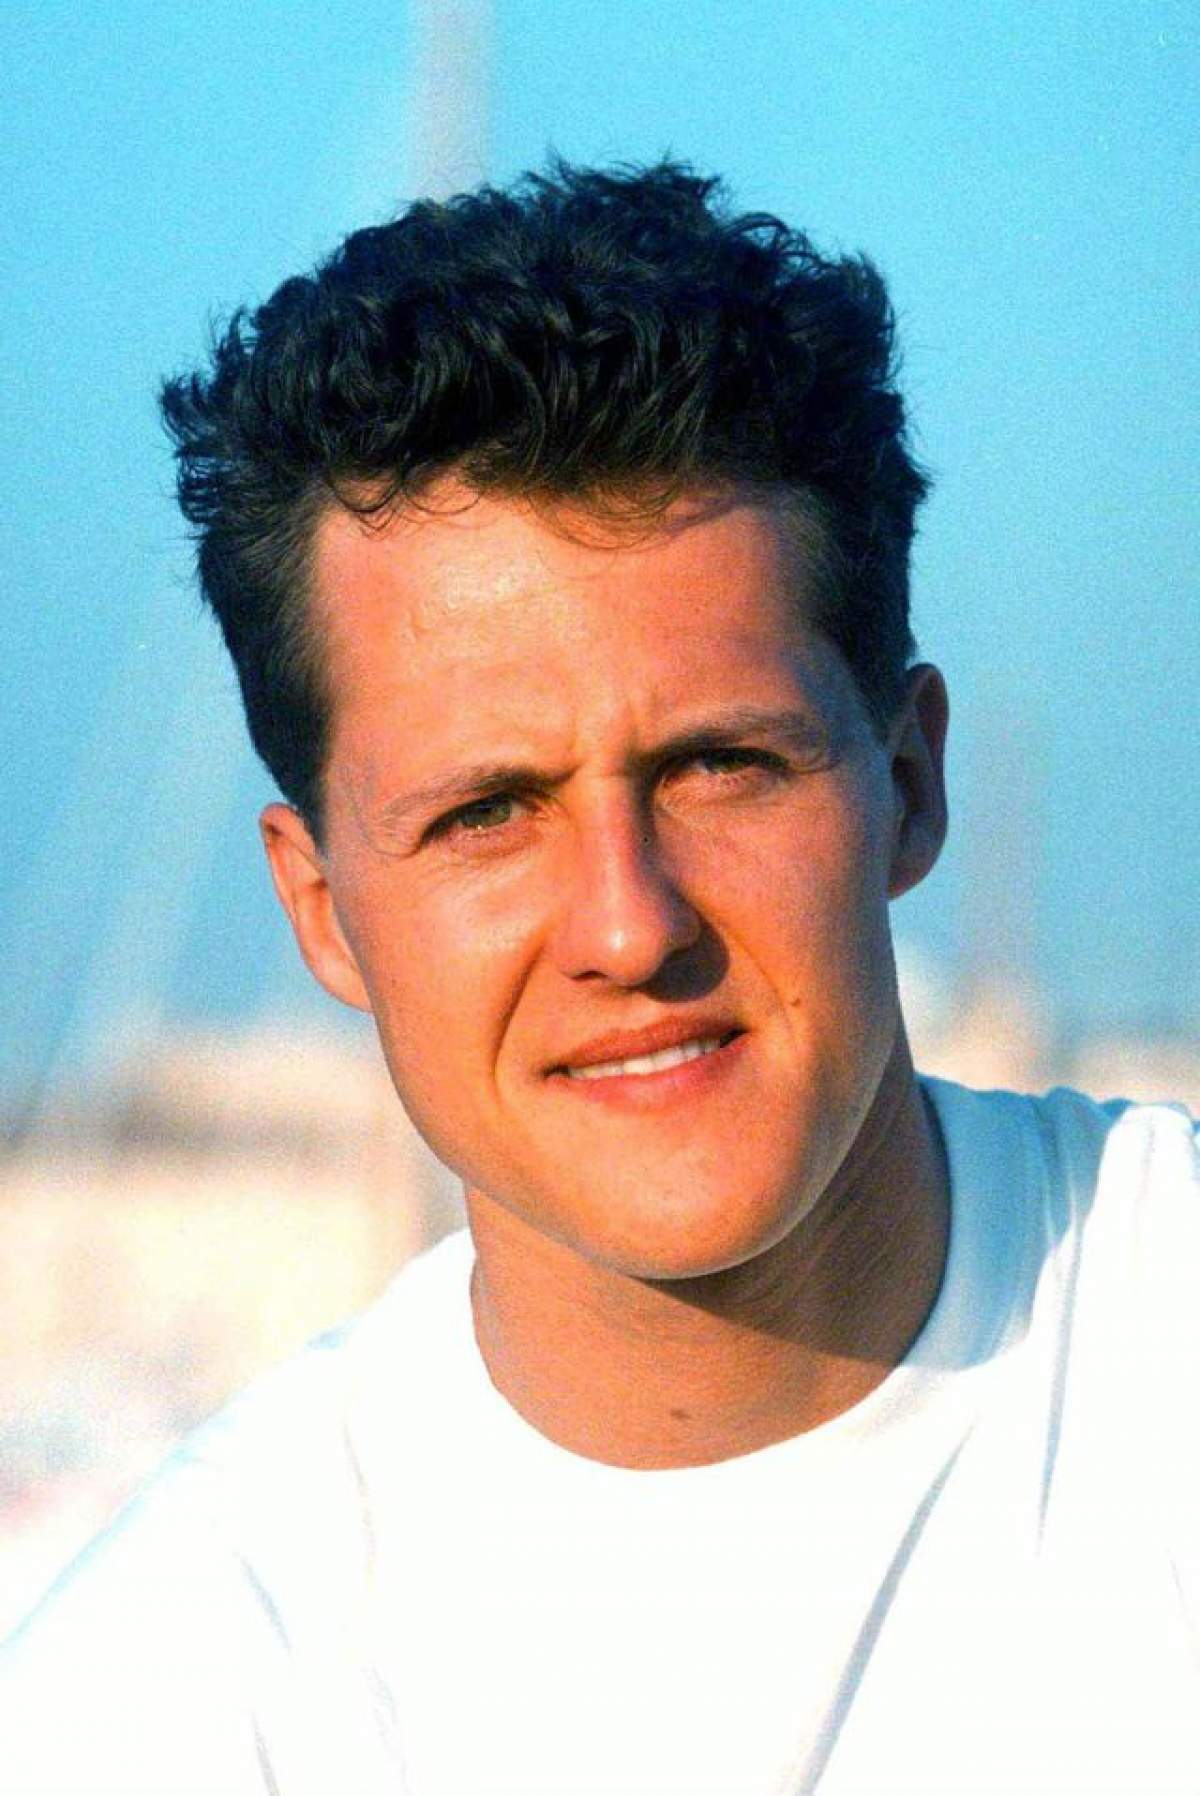 Victoria Germaniei de la Campionatul Mondial l-a trezit pe Schumacher din comă! Care au fost primele semne de viaţă ale pilotului